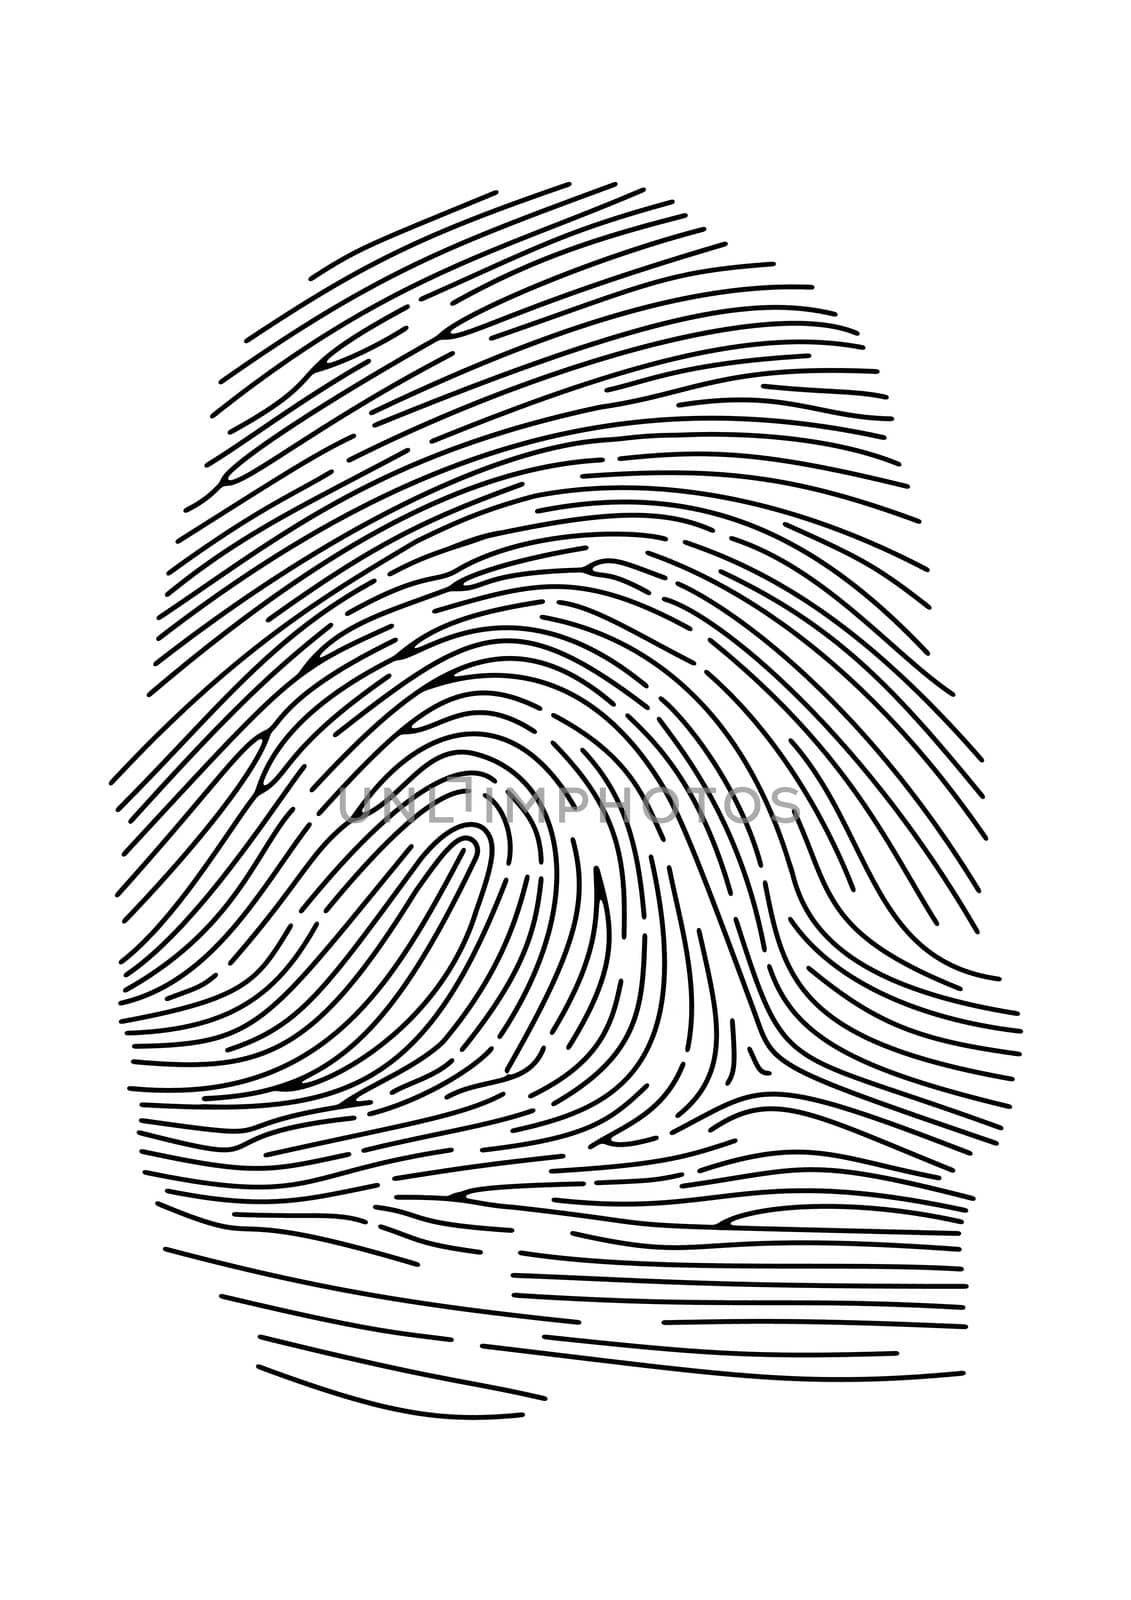 Fingerprint by darrenwhittingham